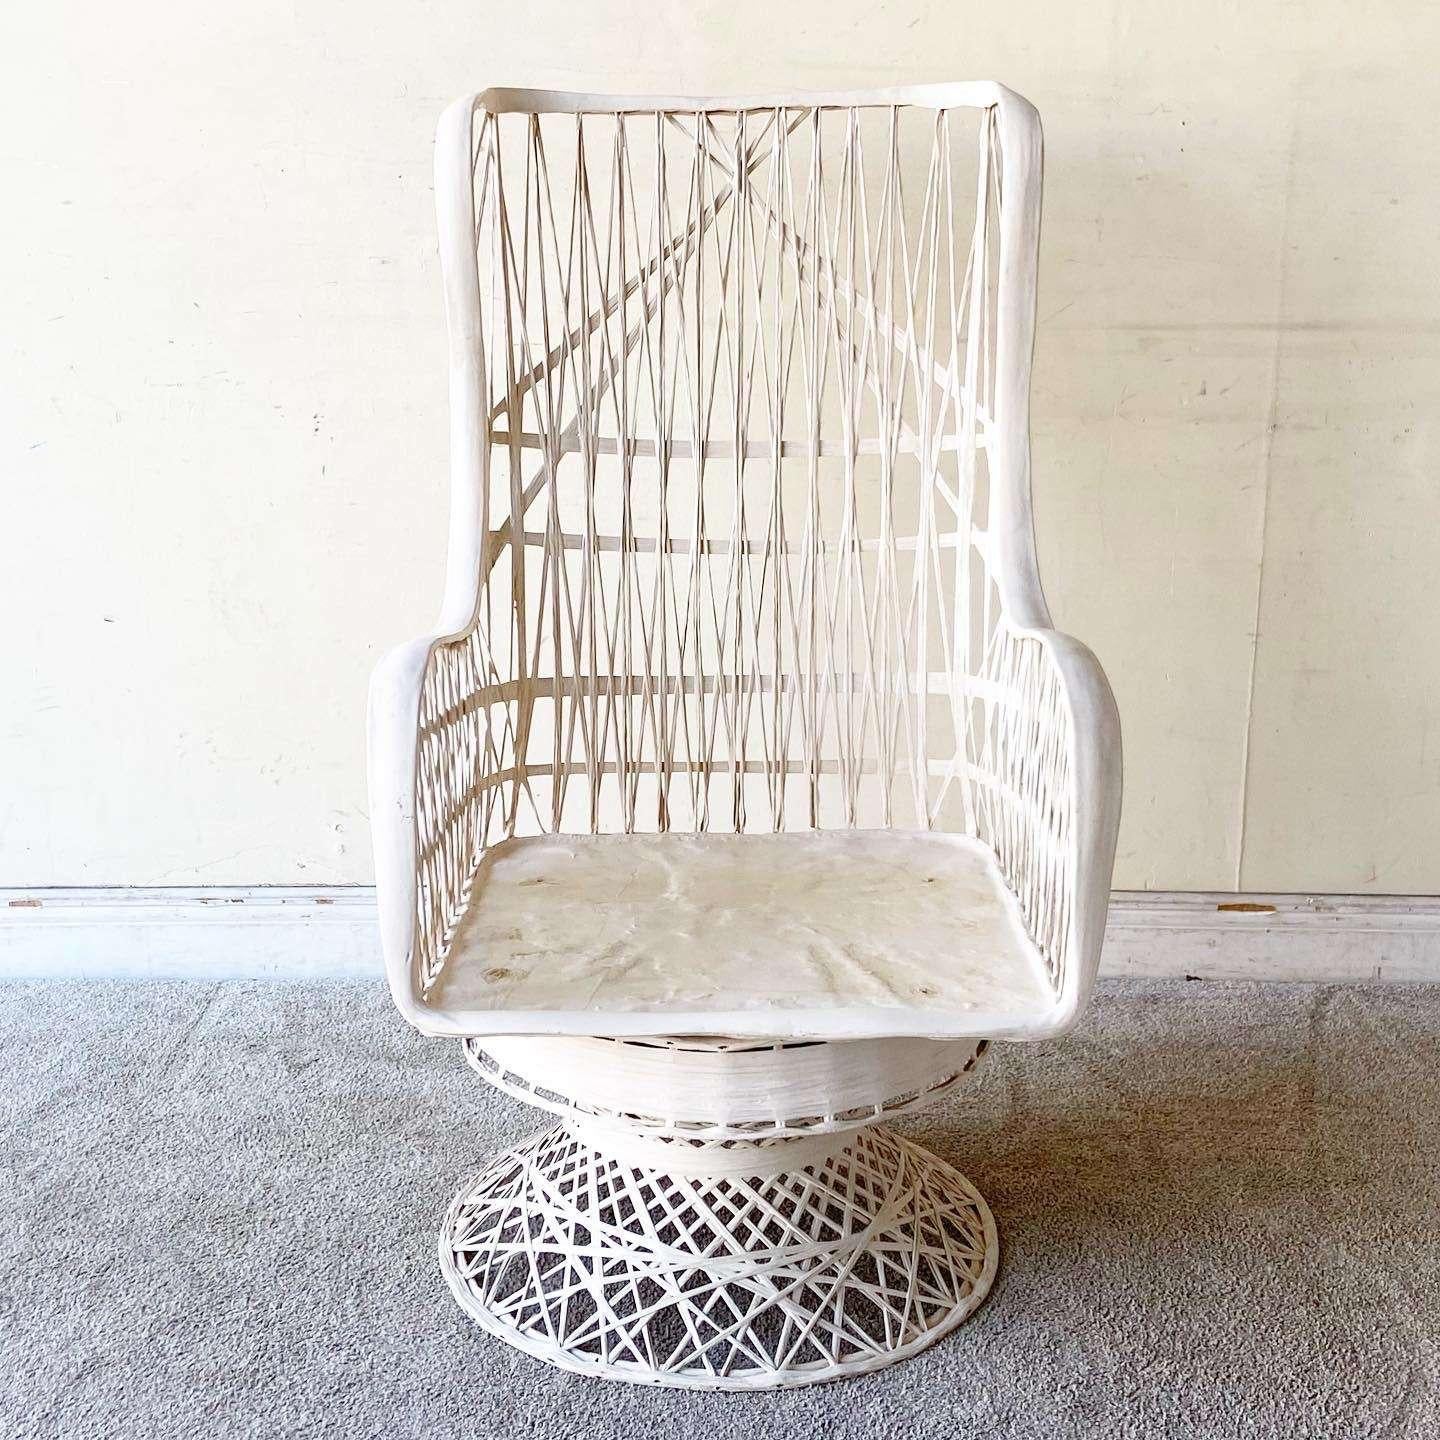 Superbe chaise longue vintage en fibre de verre filée Russell Woodard du milieu du siècle dernier avec ottoman/repose-pieds. Il s'agit d'une construction tissée fantastique avec une finition blanc cassé.

Dimensions du repose-pieds :
21x21x13h

La